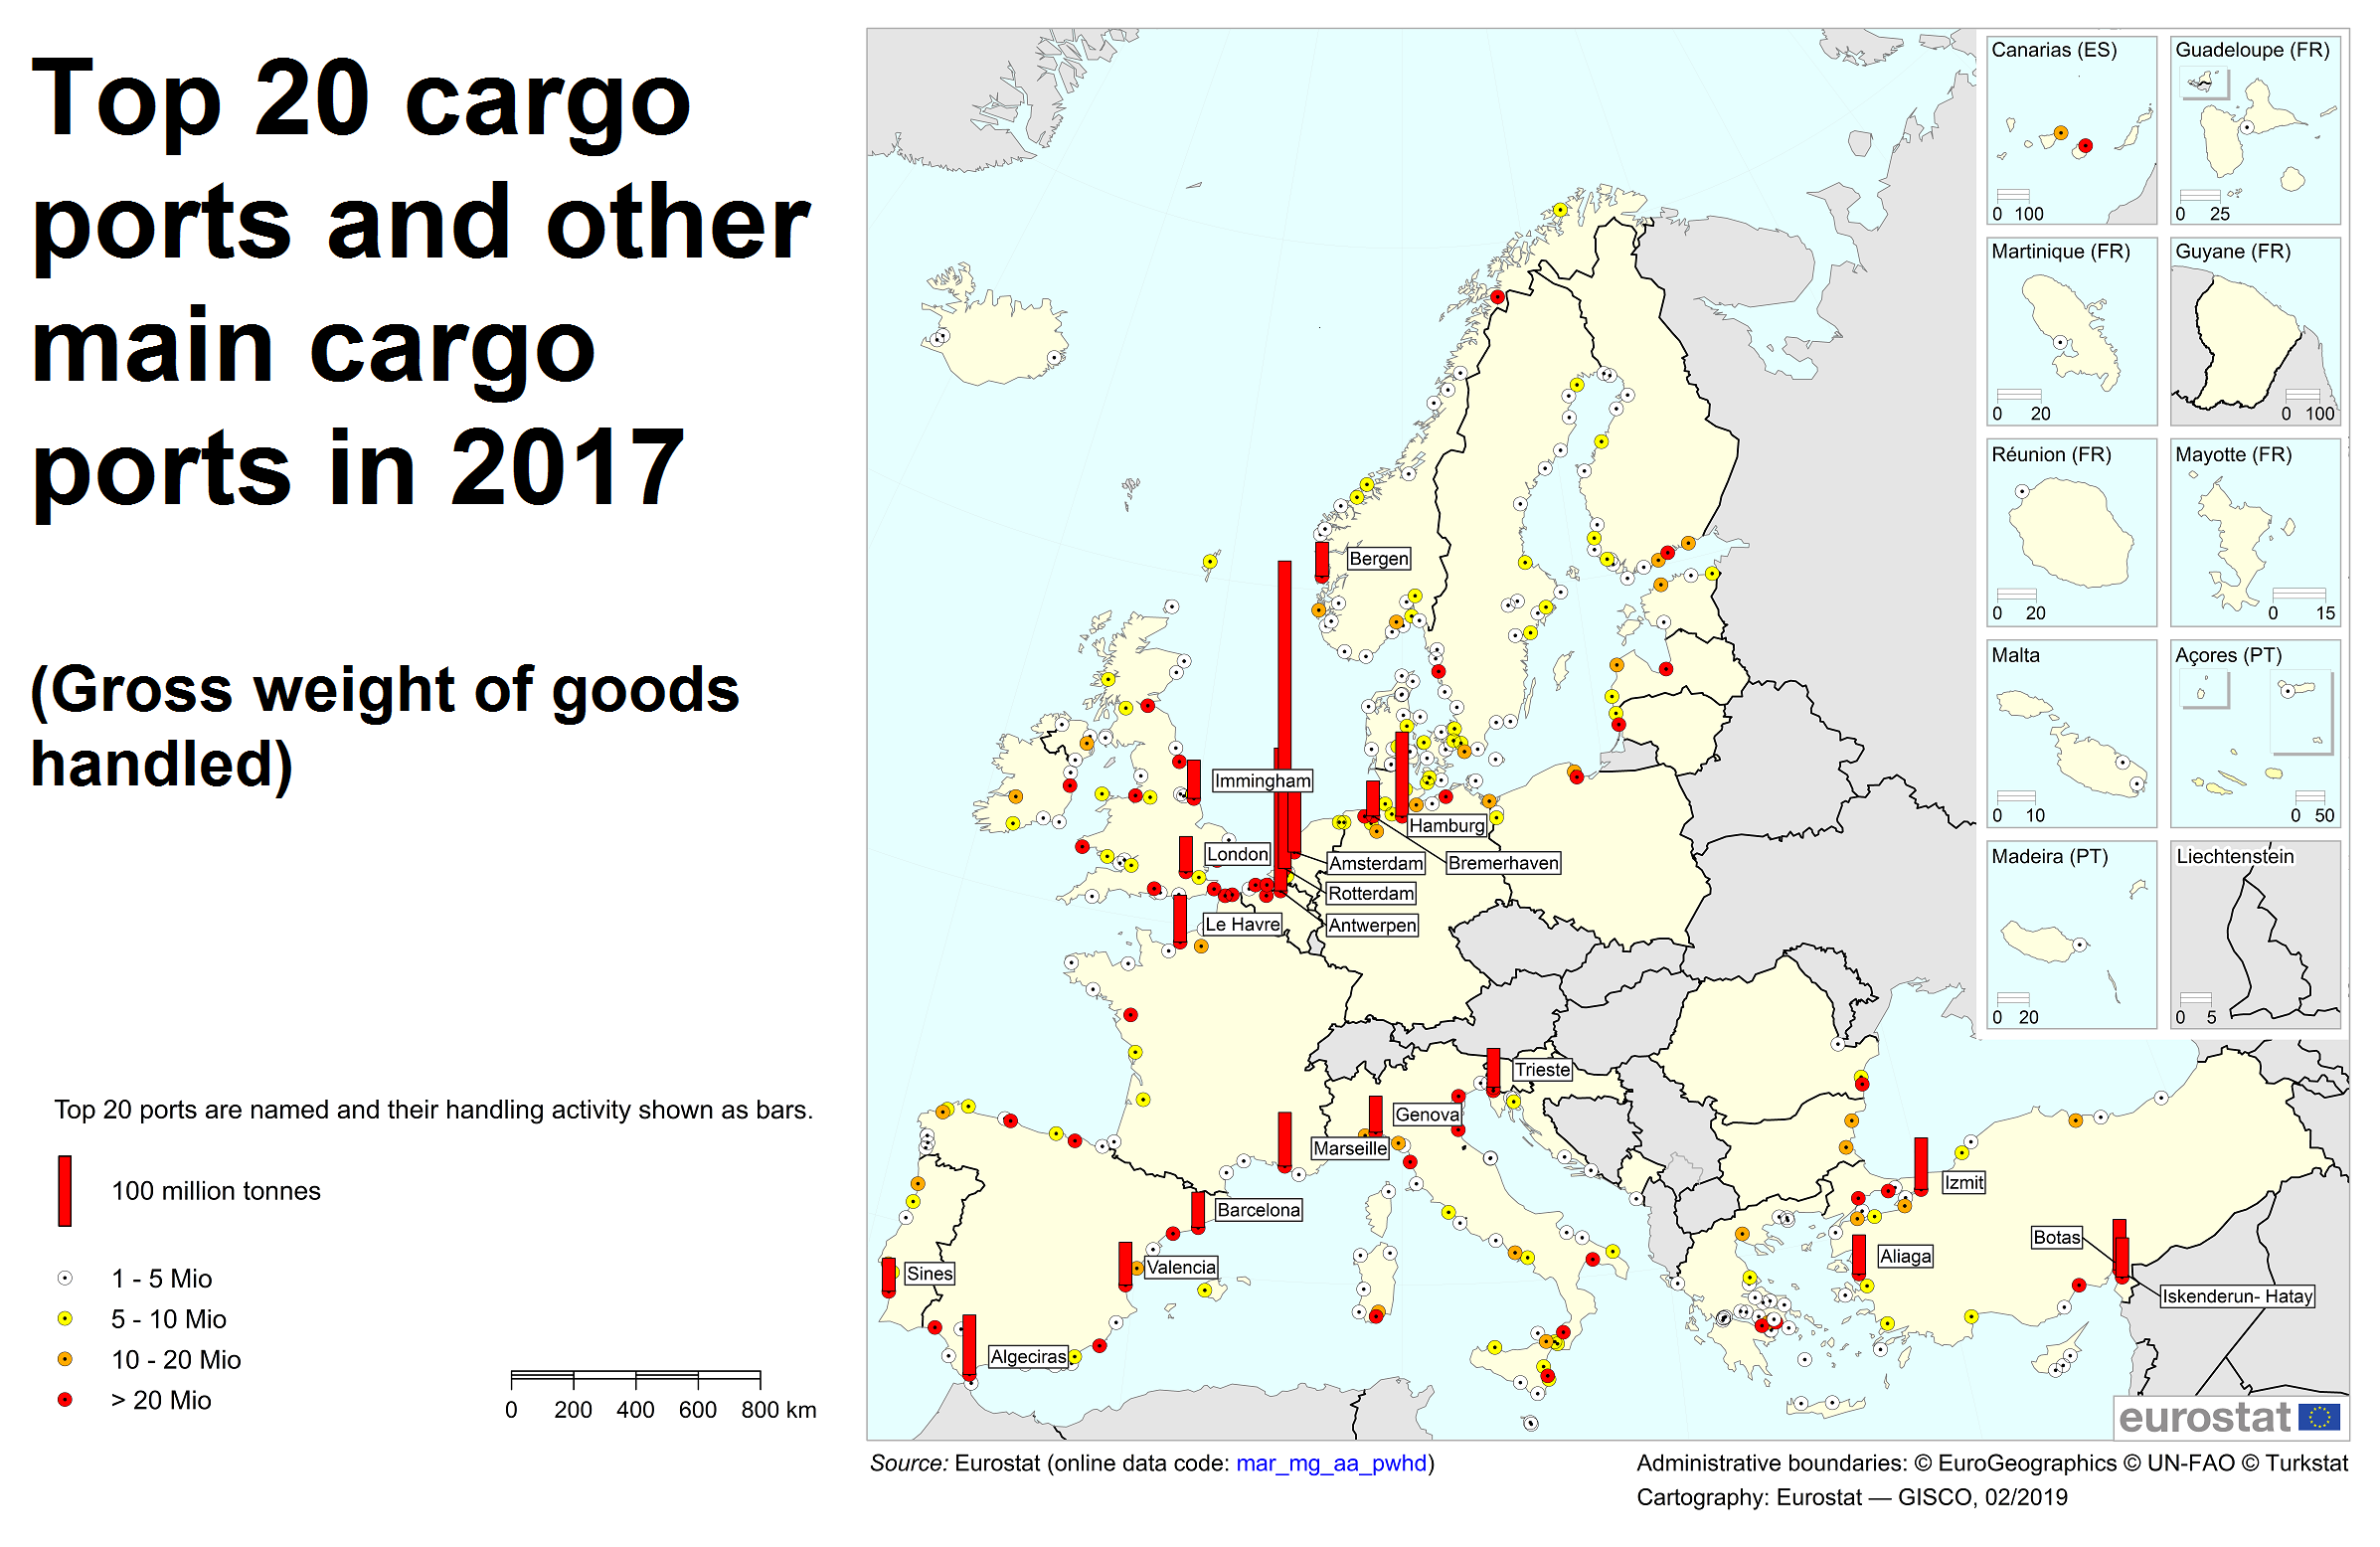 https://ec.europa.eu/eurostat/documents/4187653/9834837/Top+20+cargo+ports